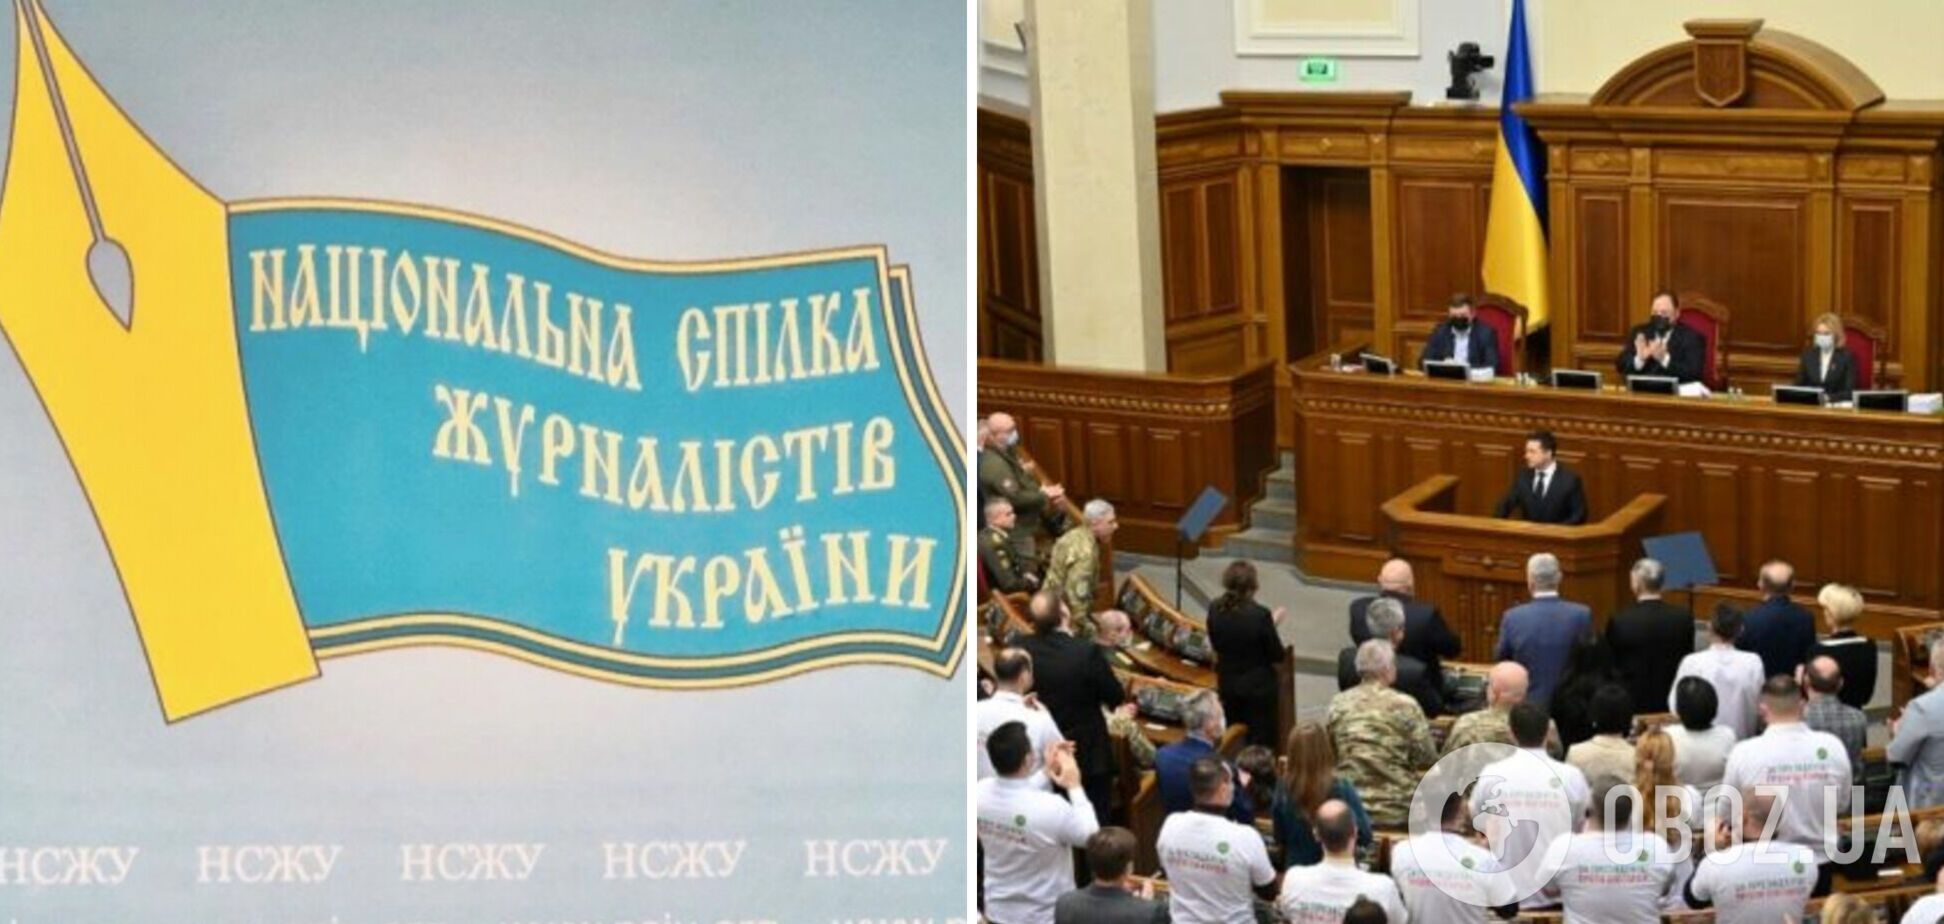 НСЖУ закликала владу зберегти свободу слова в Україні